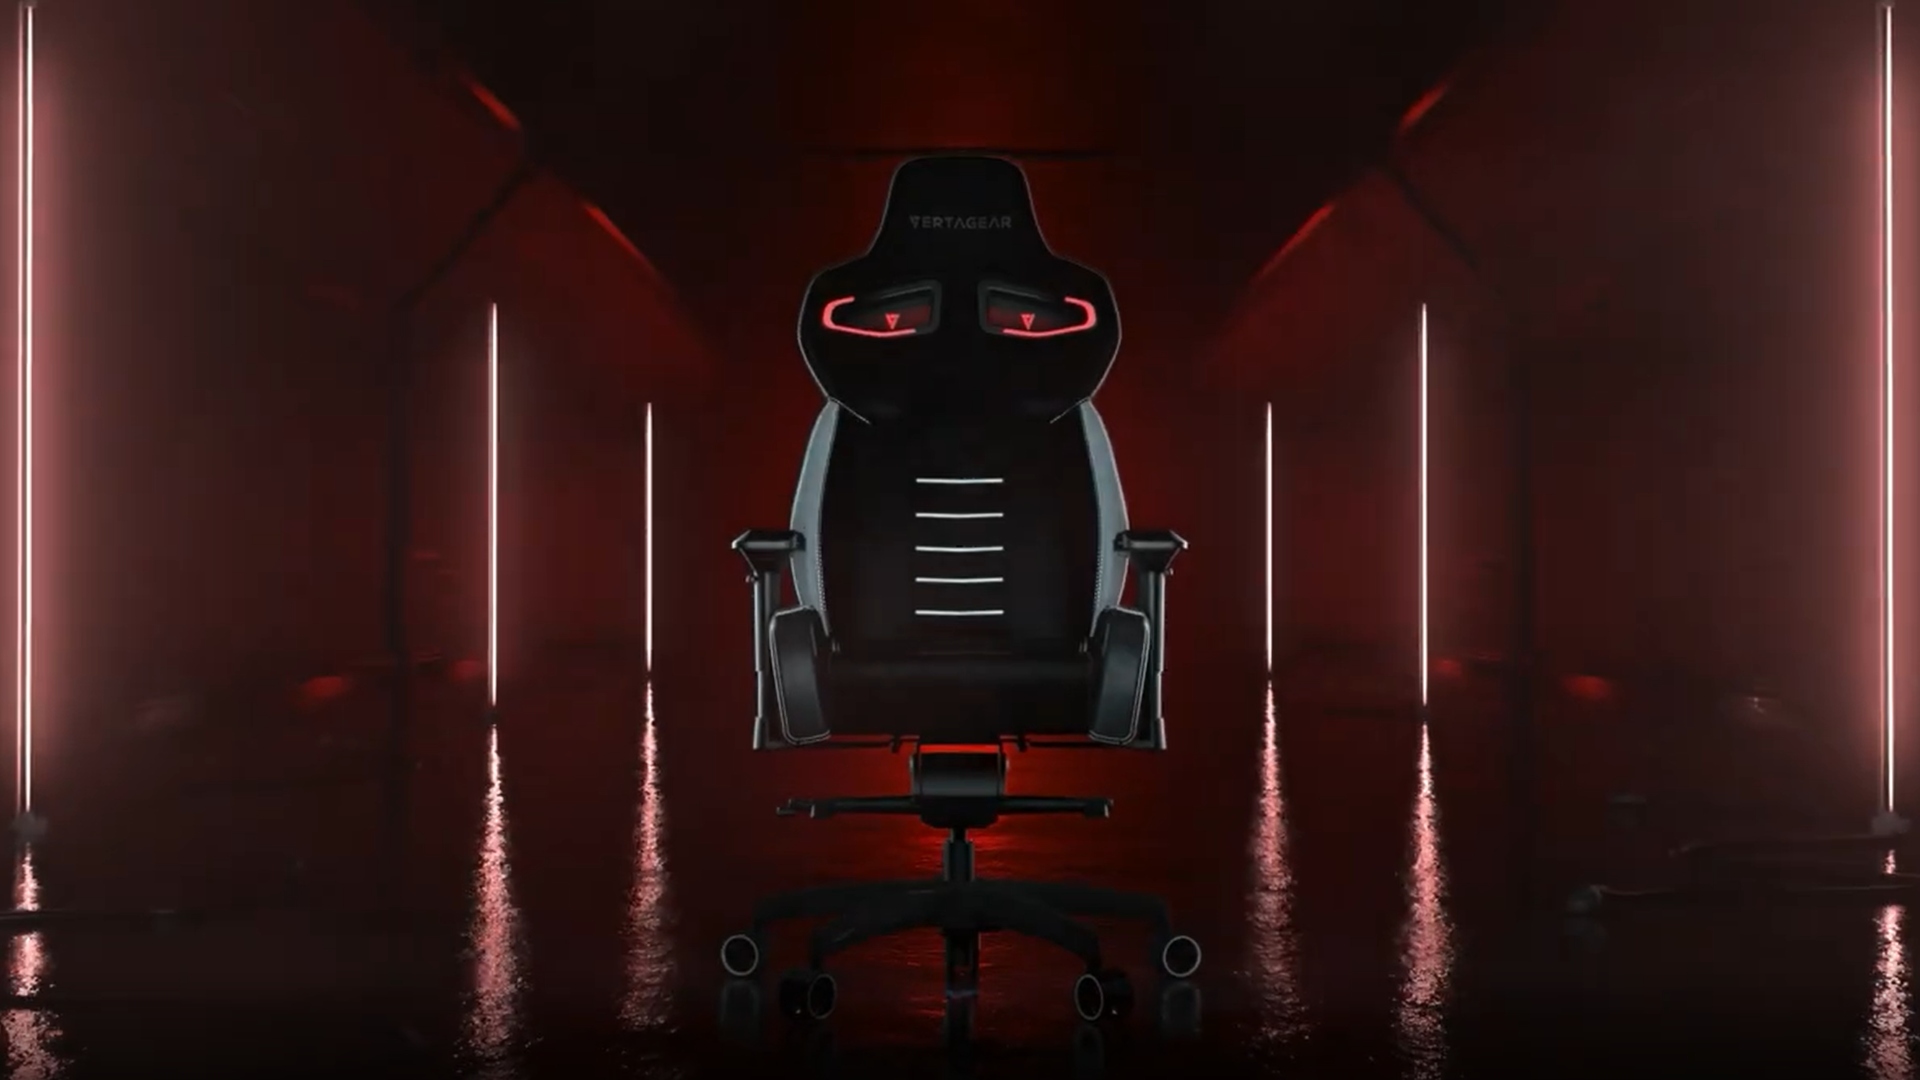 Vertagear gaming chair sitting in a dark, wet, tunnel.